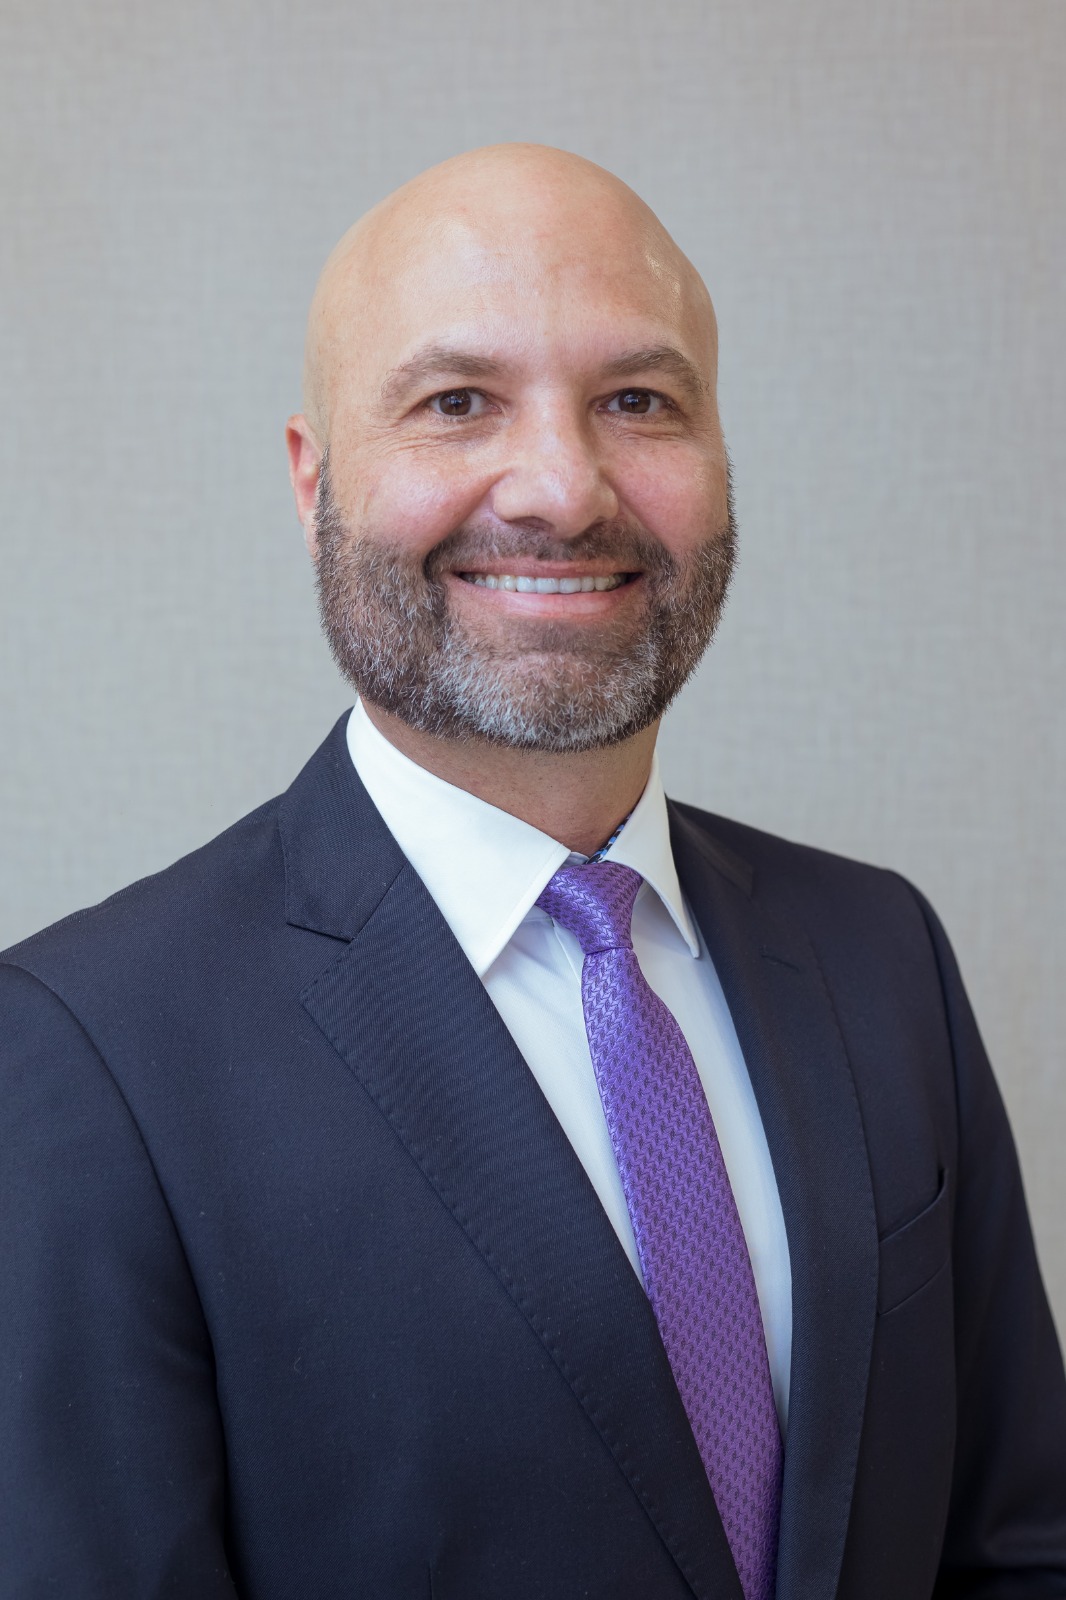 Dr. Fabiano Holz Beserra é um homem de pele clara, calvo e com a barba grisalha. Ele está sorrindo. Usa terno azul marinho, gravata lilás e camisa branca.